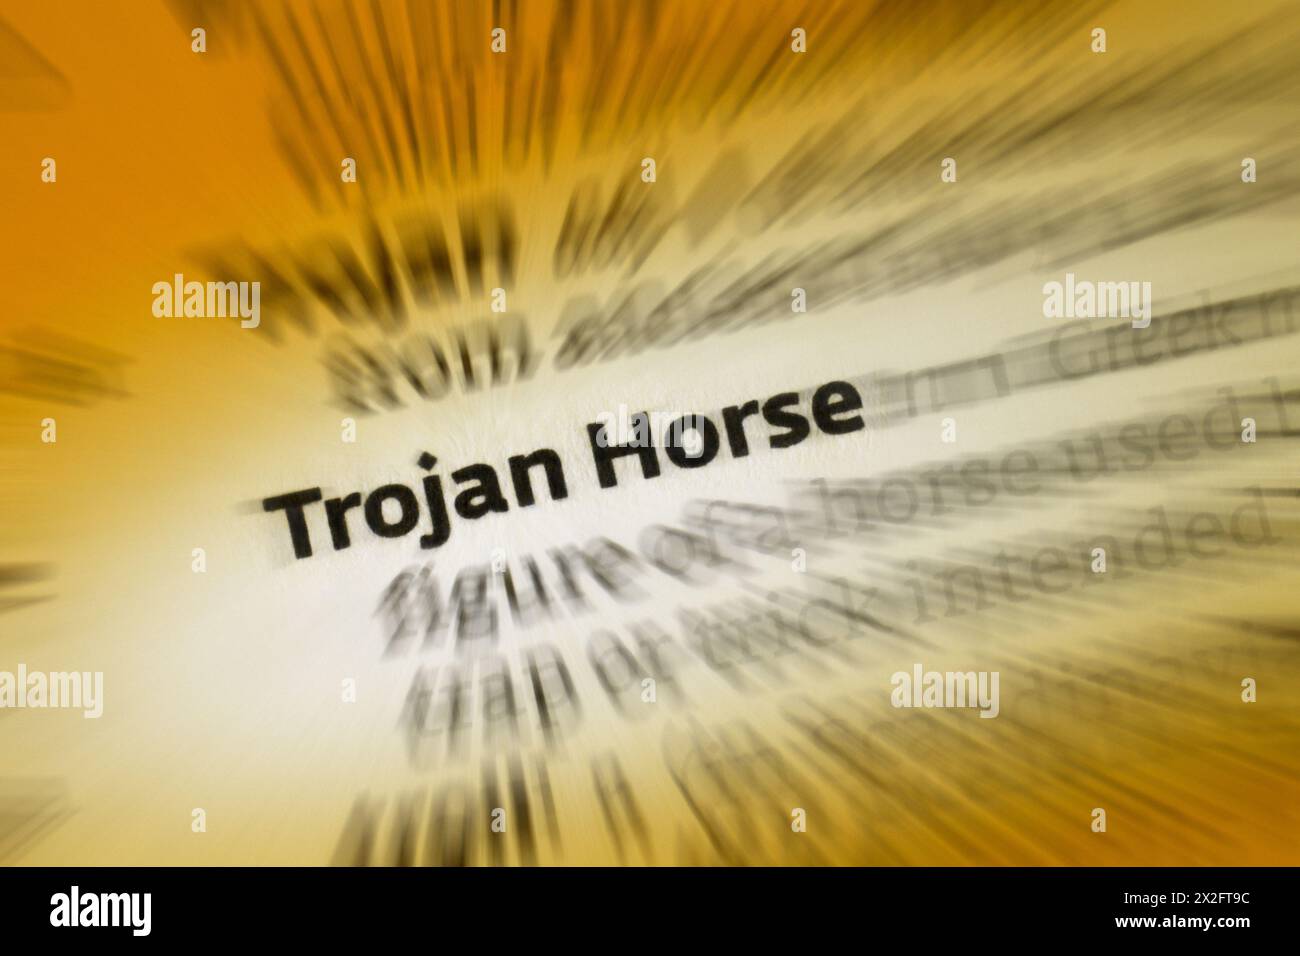 Ein Trojanisches Pferd ist ein Computerprogramm, das die Sicherheit eines Computersystems verletzen soll, während es angeblich eine harmlose Funktion ausführt. Stockfoto